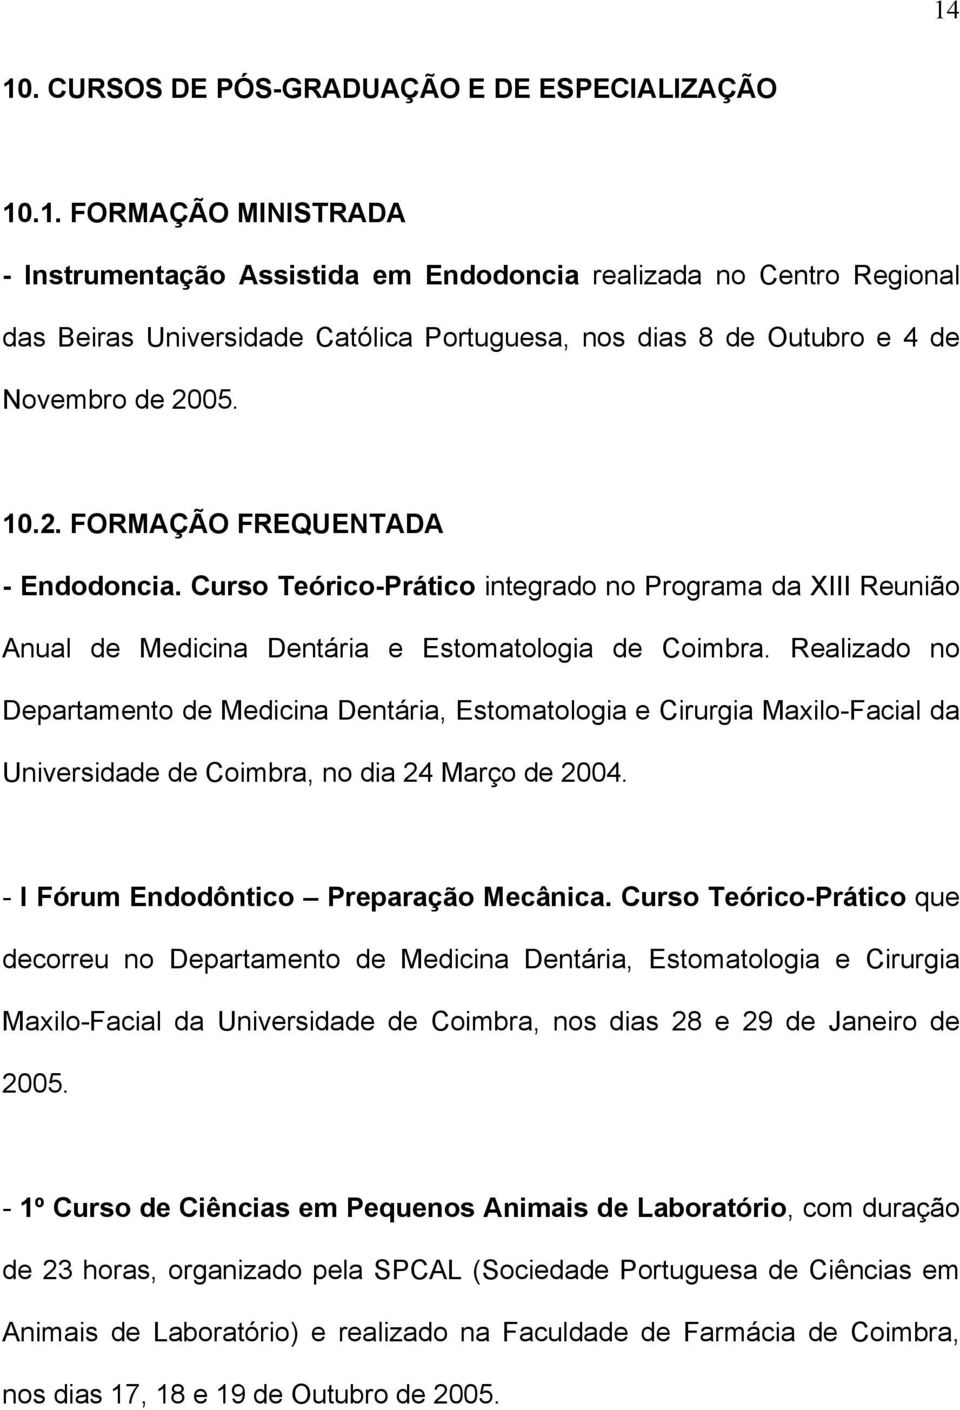 Realizado no Departamento de Medicina Dentária, Estomatologia e Cirurgia Maxilo-Facial da Universidade de Coimbra, no dia 24 Março de 2004. - I Fórum Endodôntico Preparação Mecânica.